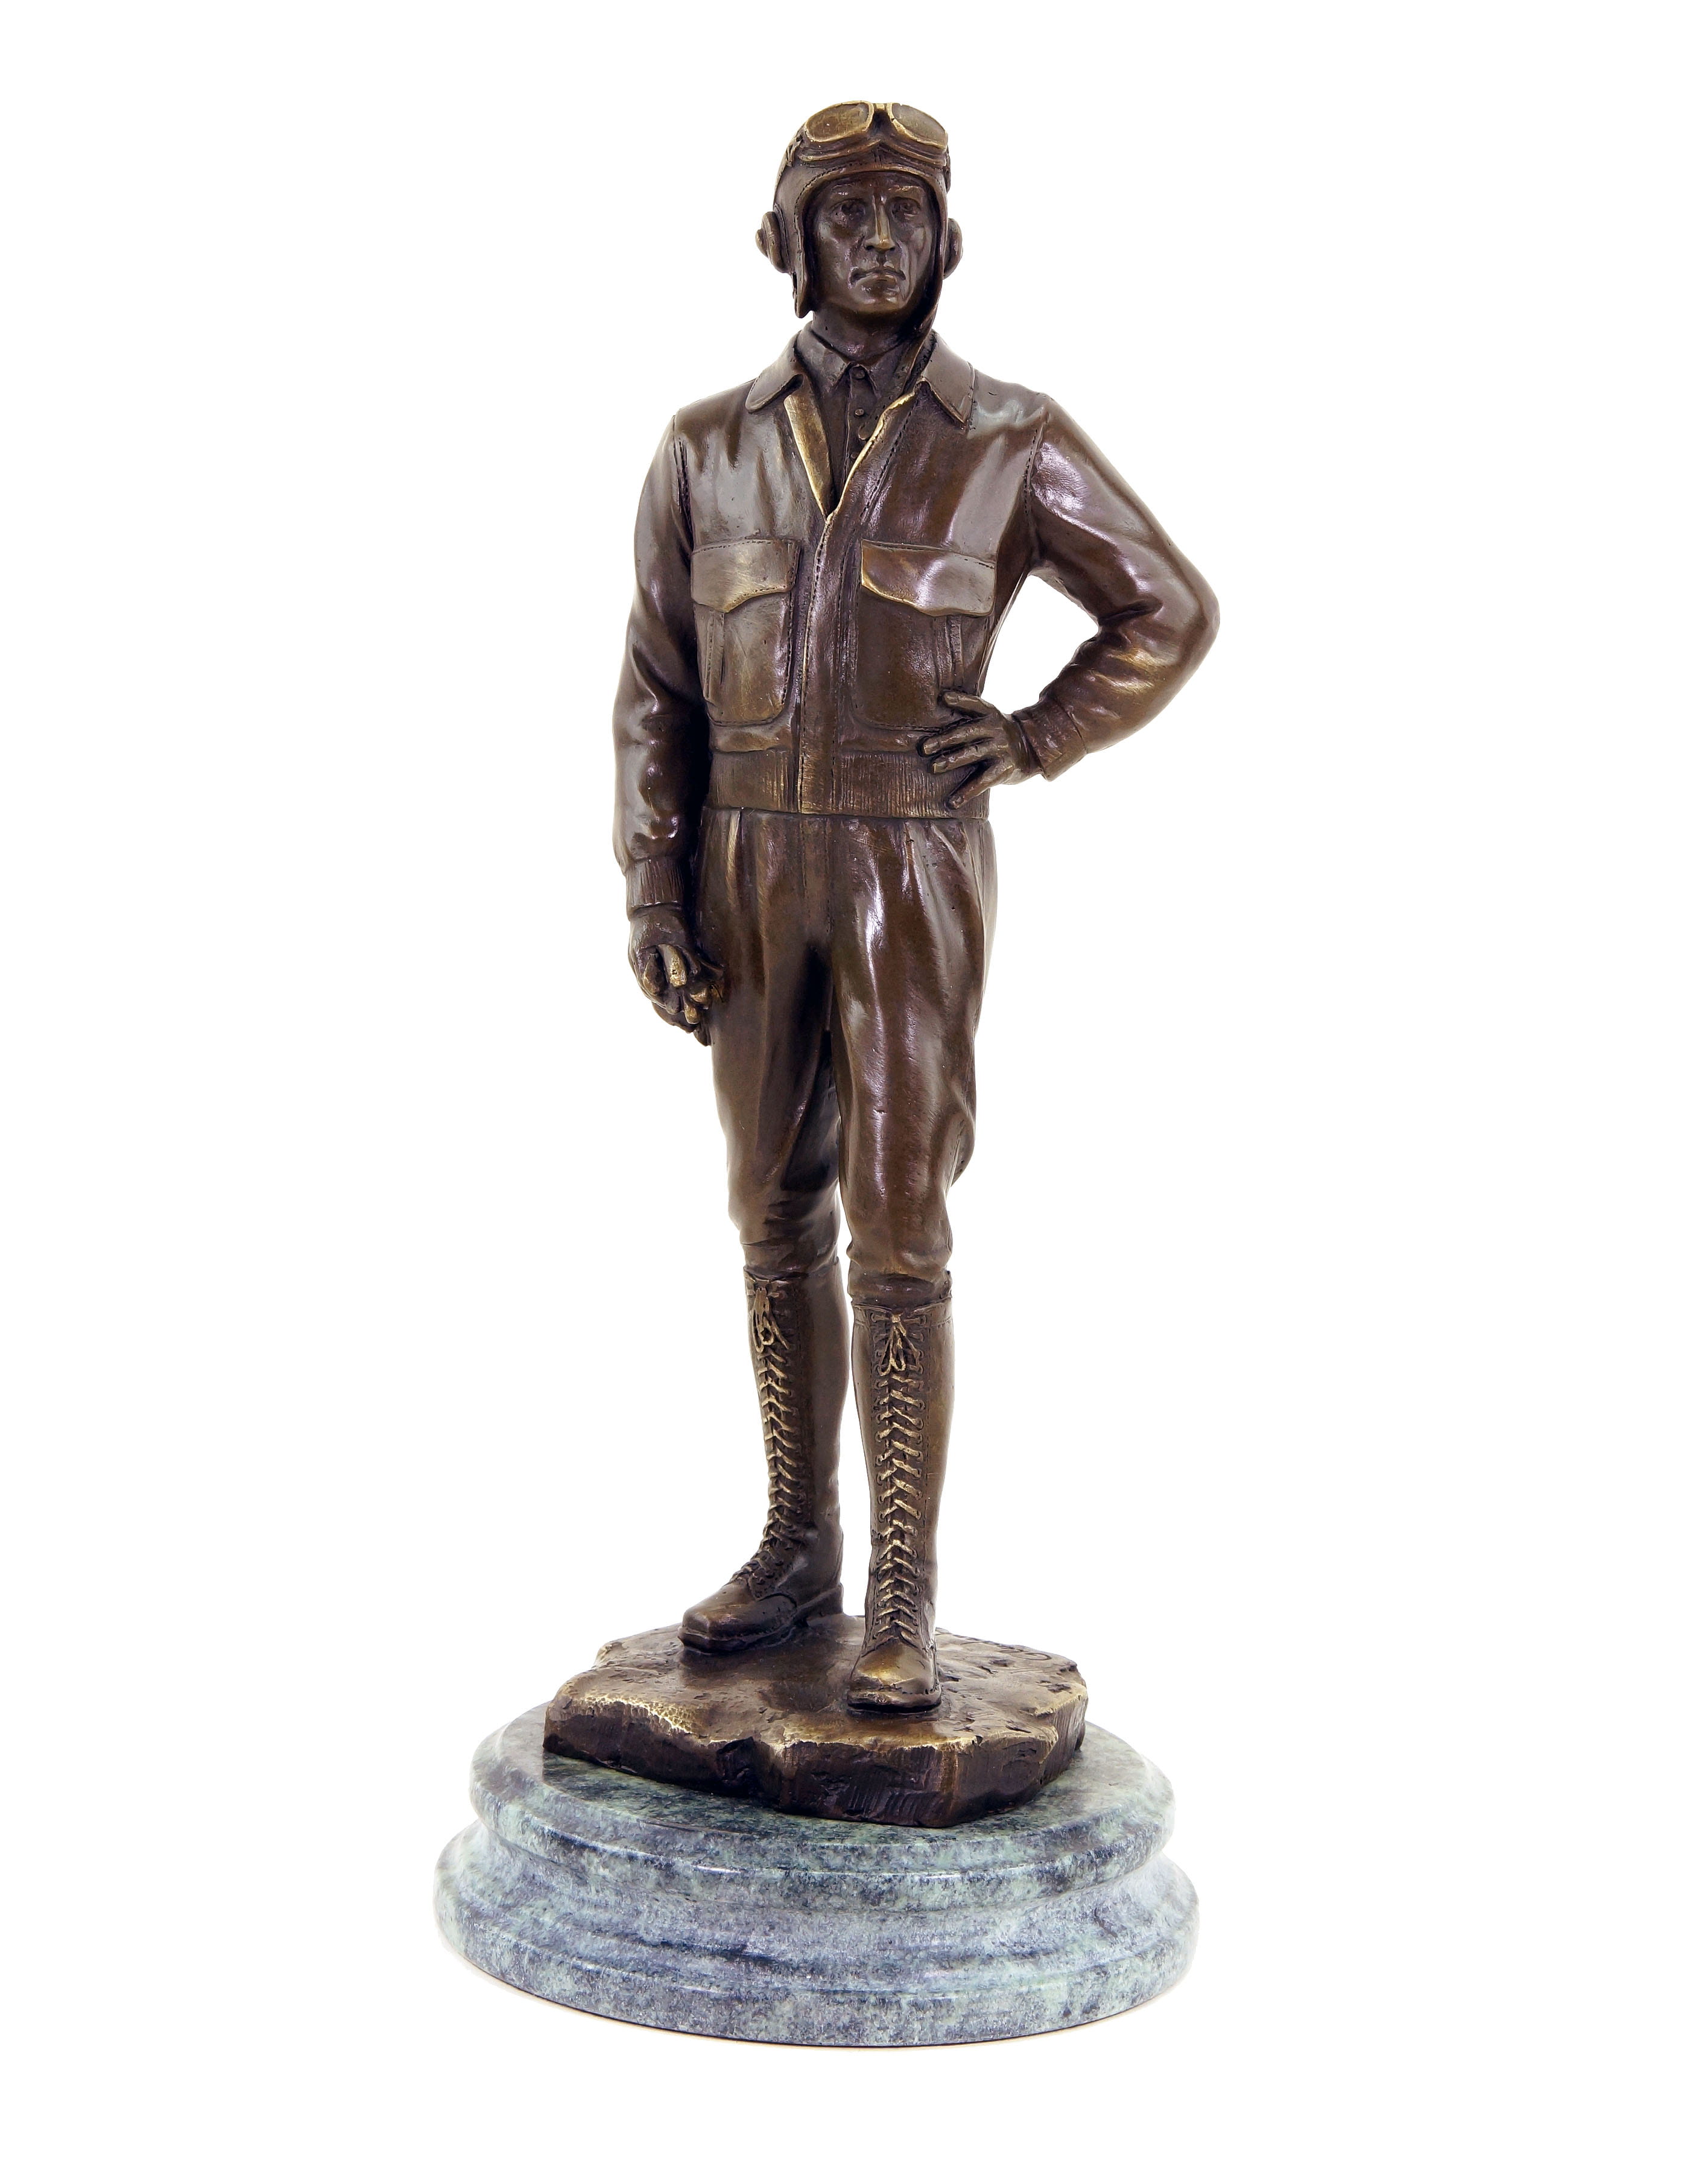 Stilarts Bronzefigur Bronze Büste Figur Flieger Pilot Militaria Dachbodenfund 